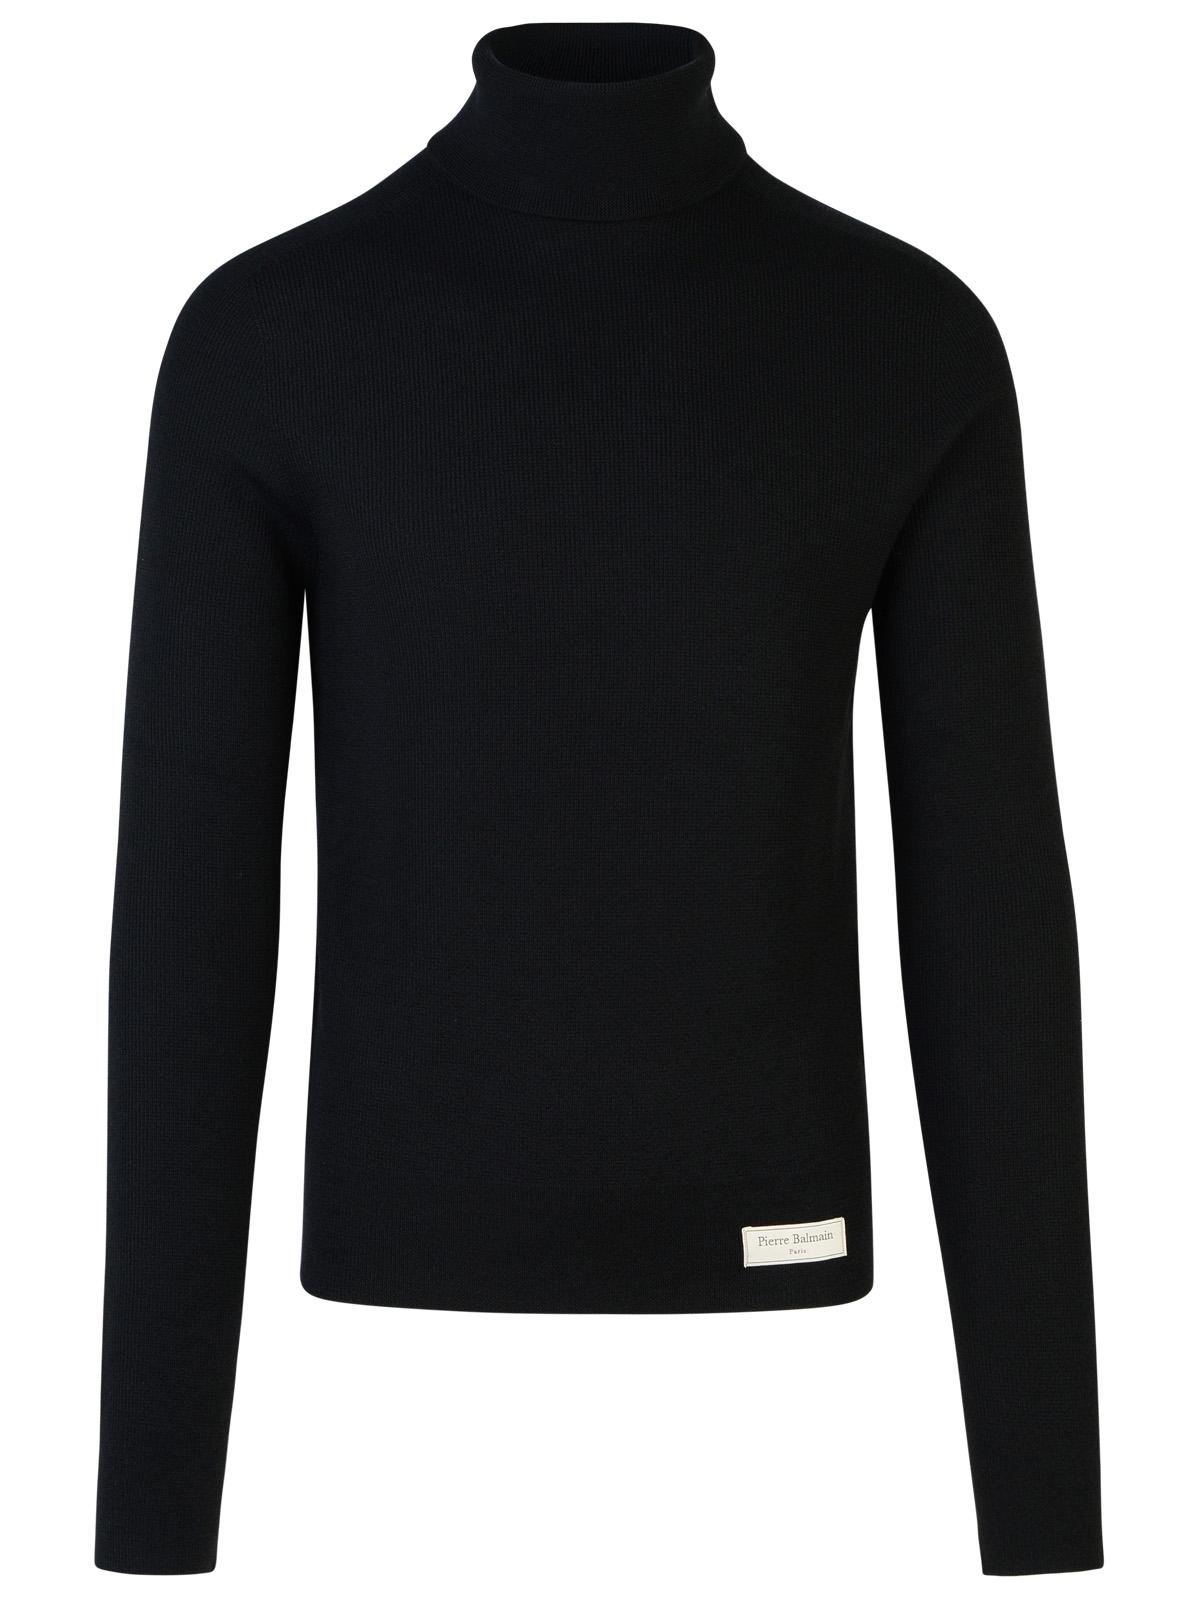 Balmain Black Wool Turtleneck Sweater - 1